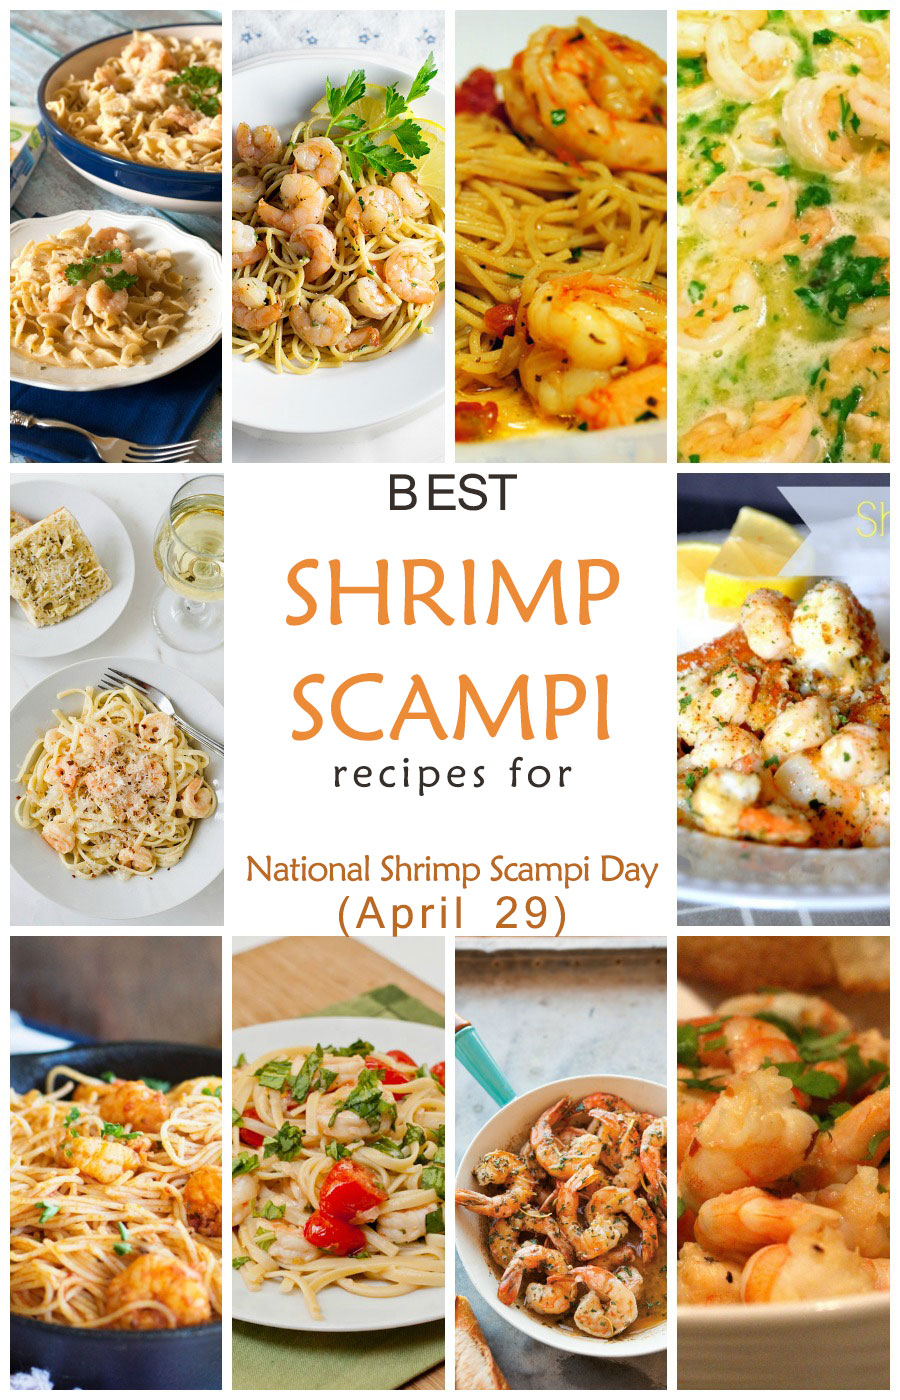 Best Shrimp Scampi Recipes for National Shrimp Scampi Day (April 29)